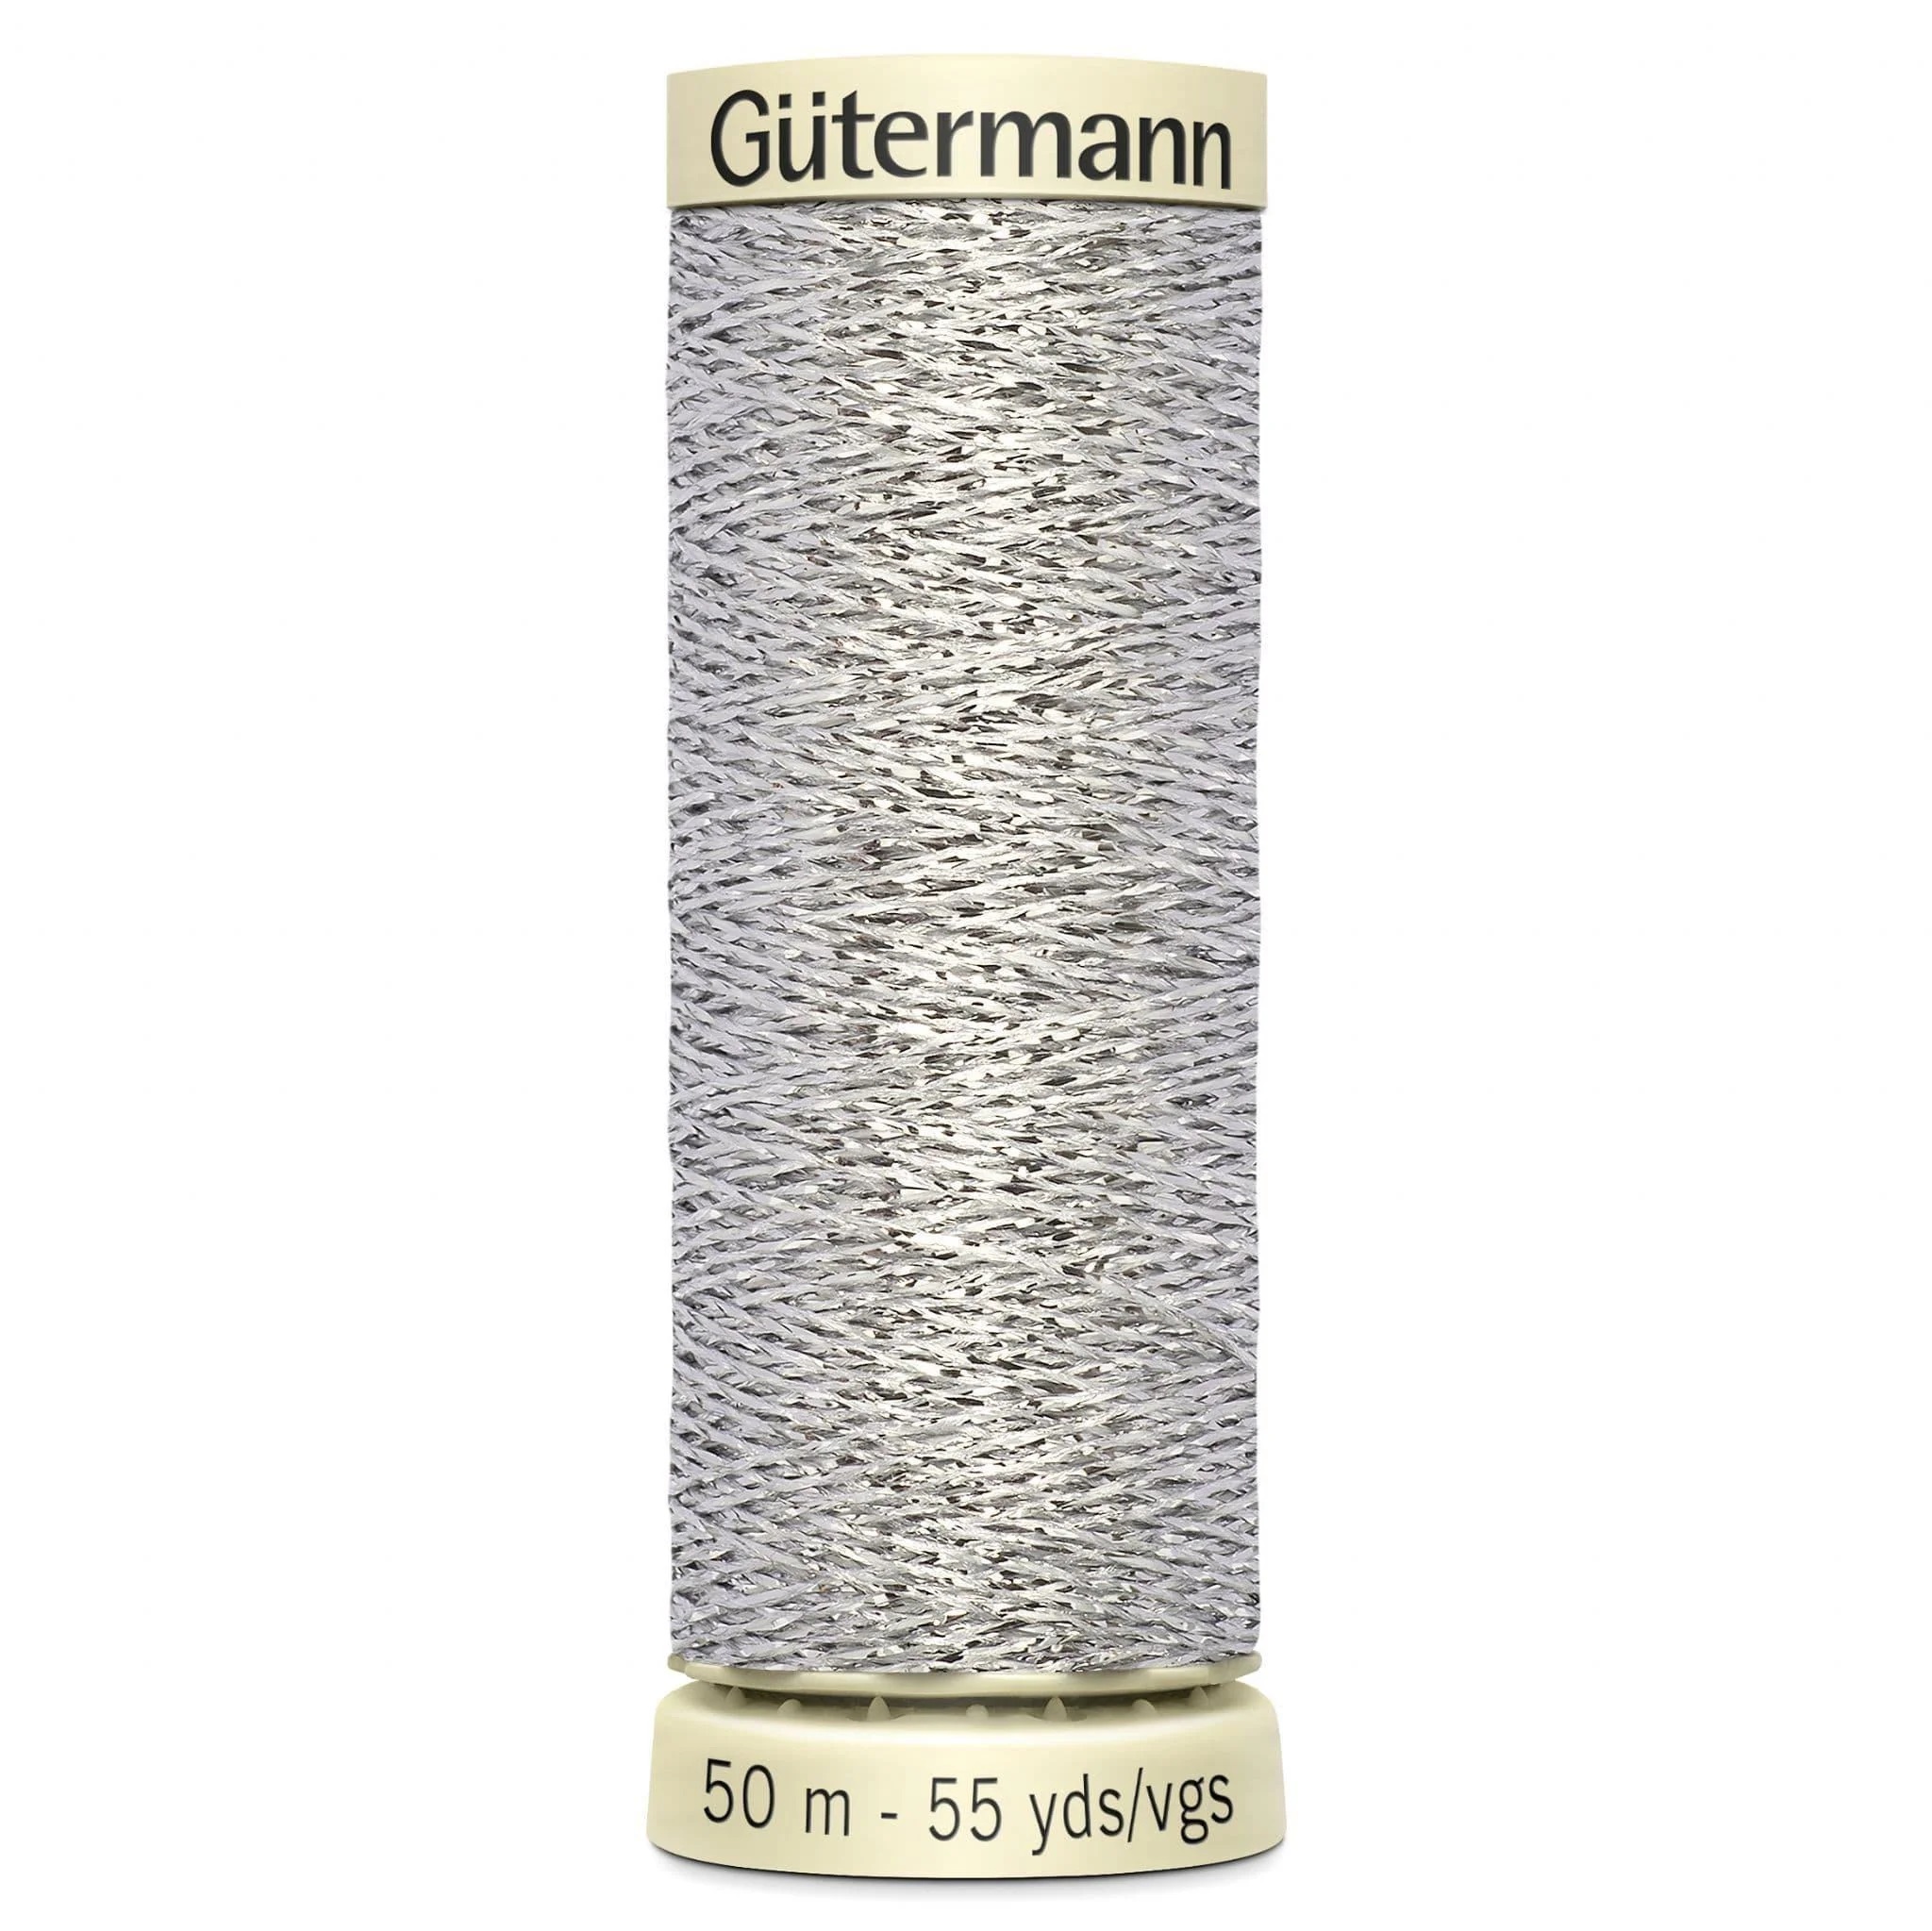 Gutermann Metallic